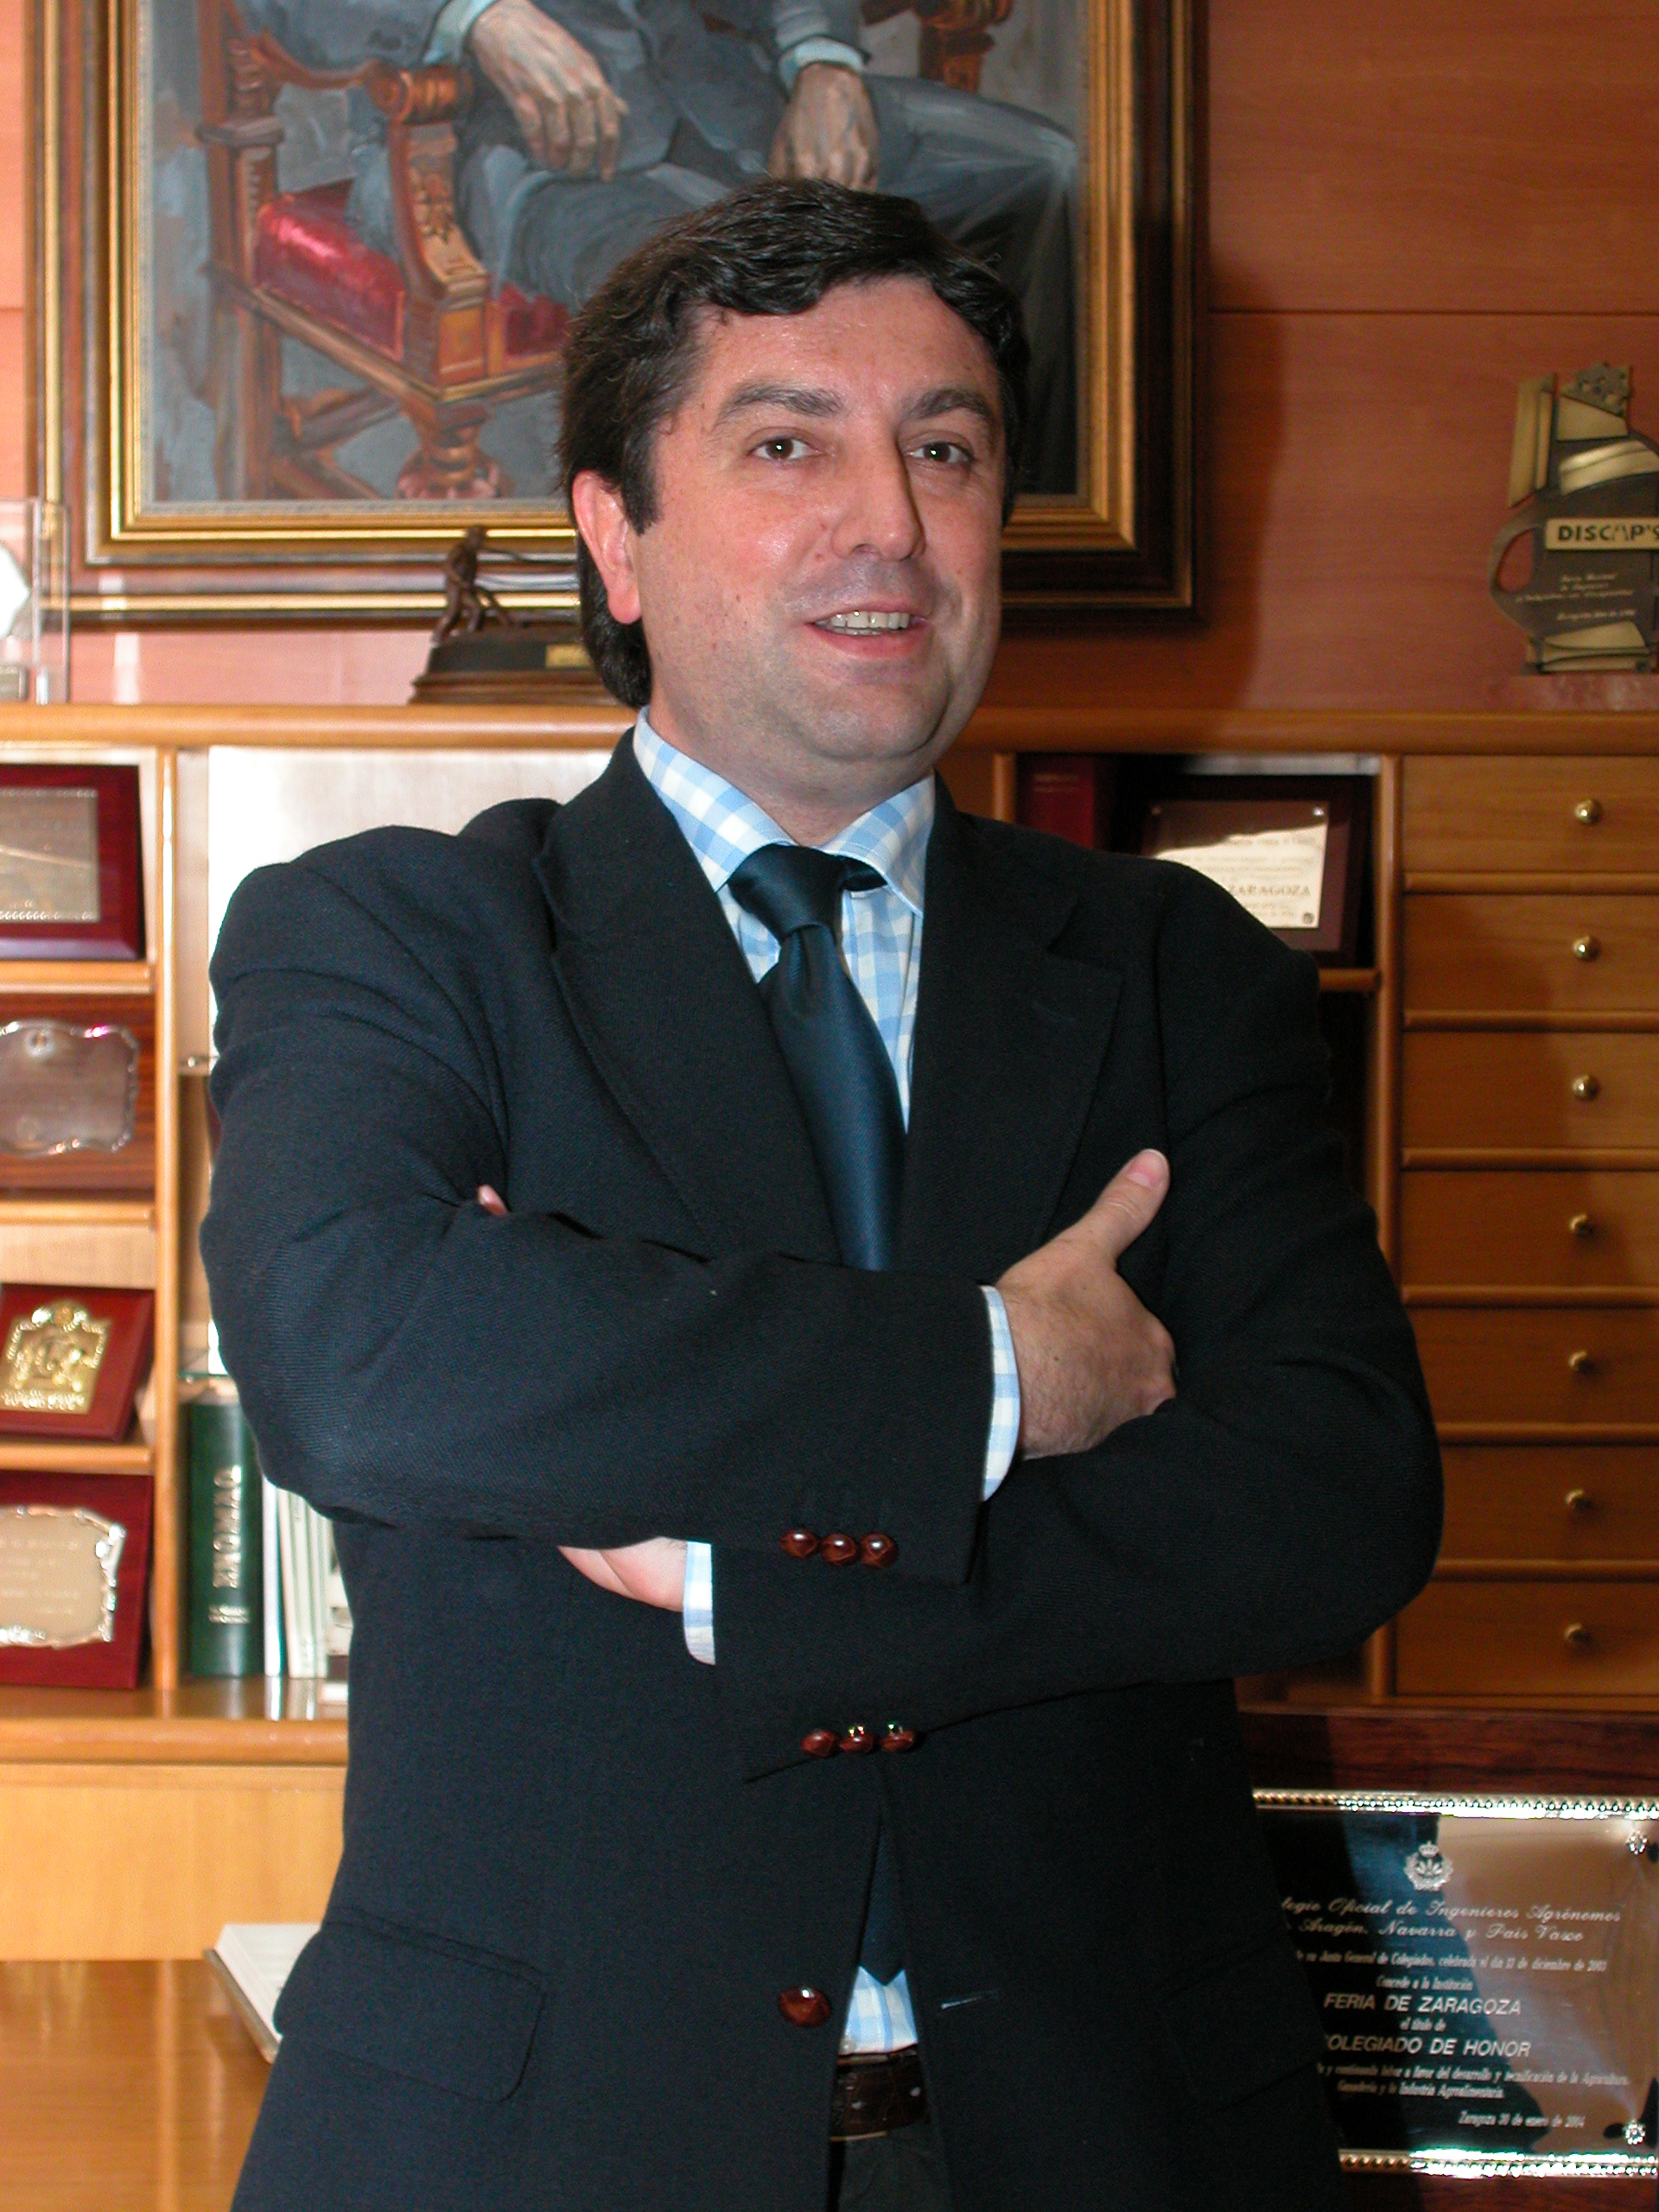 ENTREVISTA A JOSE ANTONIO VICENTE, DIRECTOR DE FERIA DE ZARAGOZA